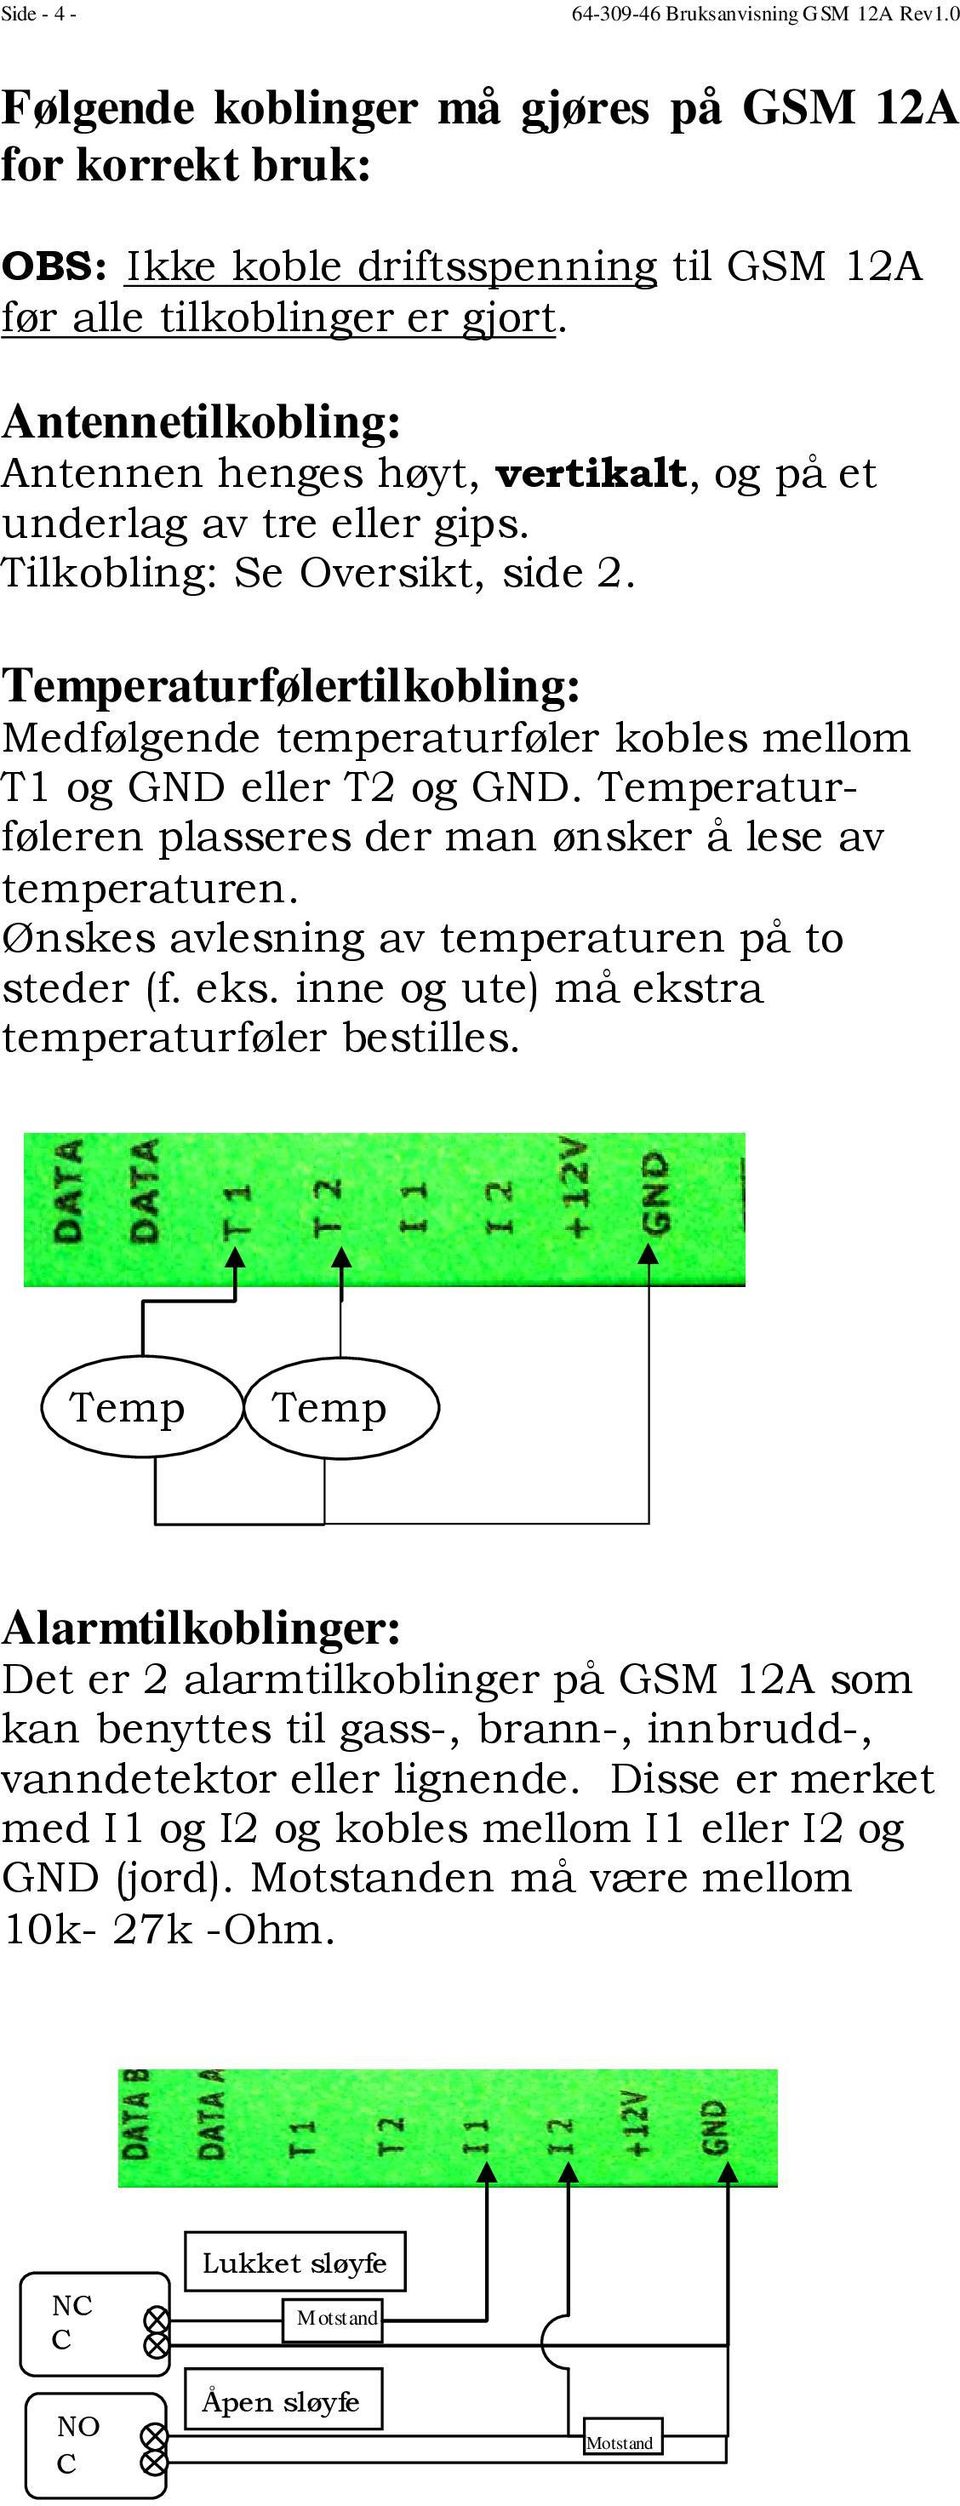 Temperaturfølertilkobling: Medfølgende temperaturføler kobles mellom T1 og GND eller T2 og GND. Temperaturføleren plasseres der man ønsker å lese av temperaturen.